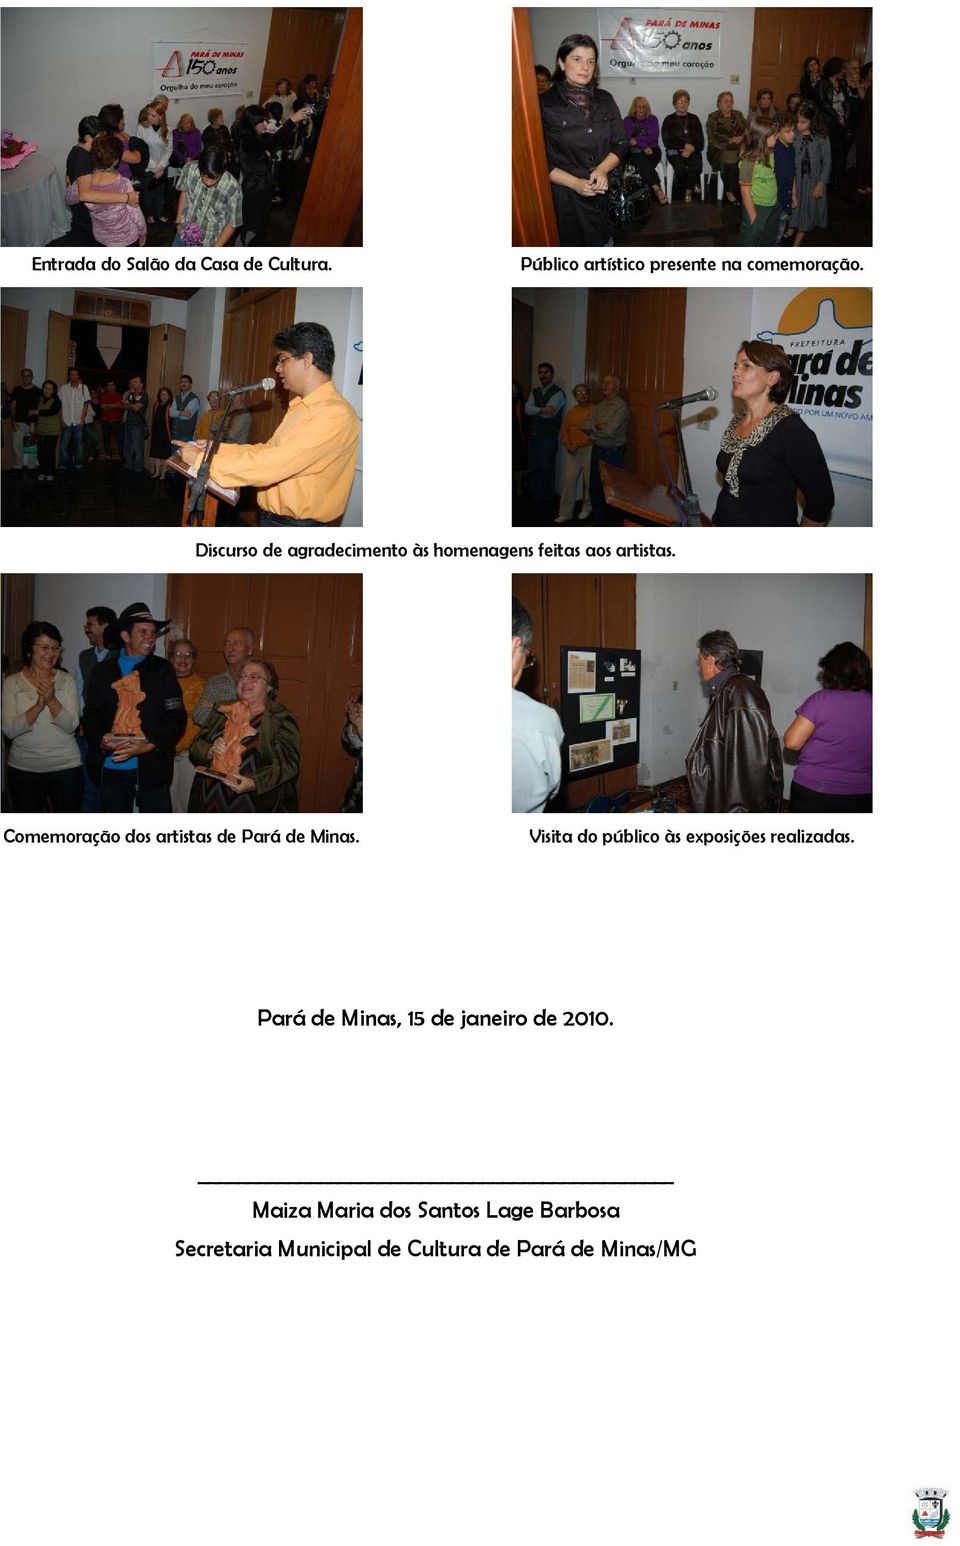 Comemoração dos artistas de Pará de Minas. Visita do público às exposições realizadas.